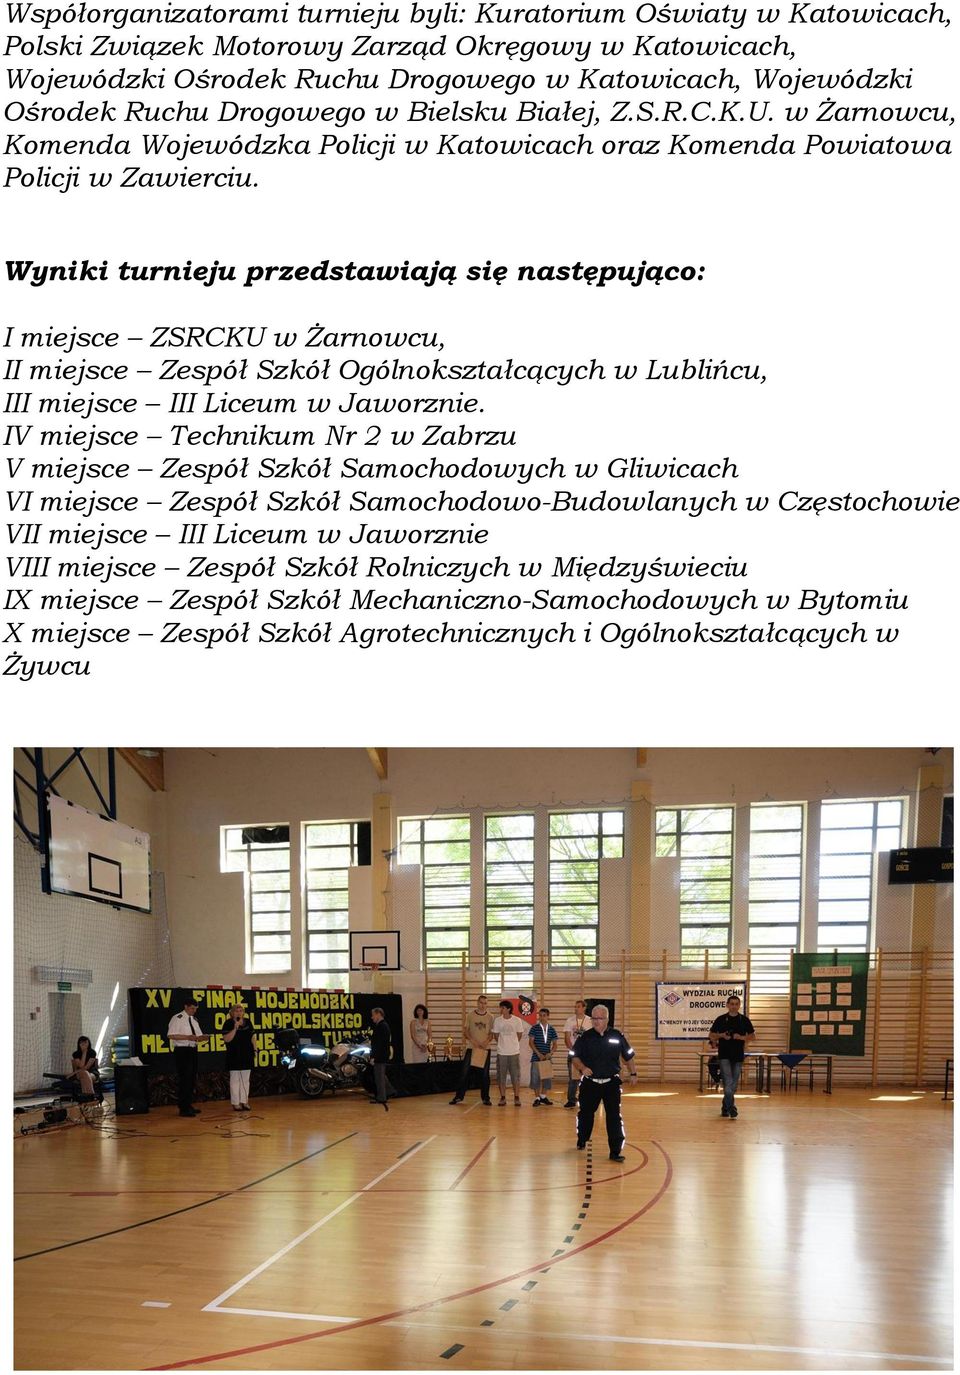 Wyniki turnieju przedstawiają się następująco: I miejsce ZSRCKU w Żarnowcu, II miejsce Zespół Szkół Ogólnokształcących w Lublińcu, III miejsce III Liceum w Jaworznie.